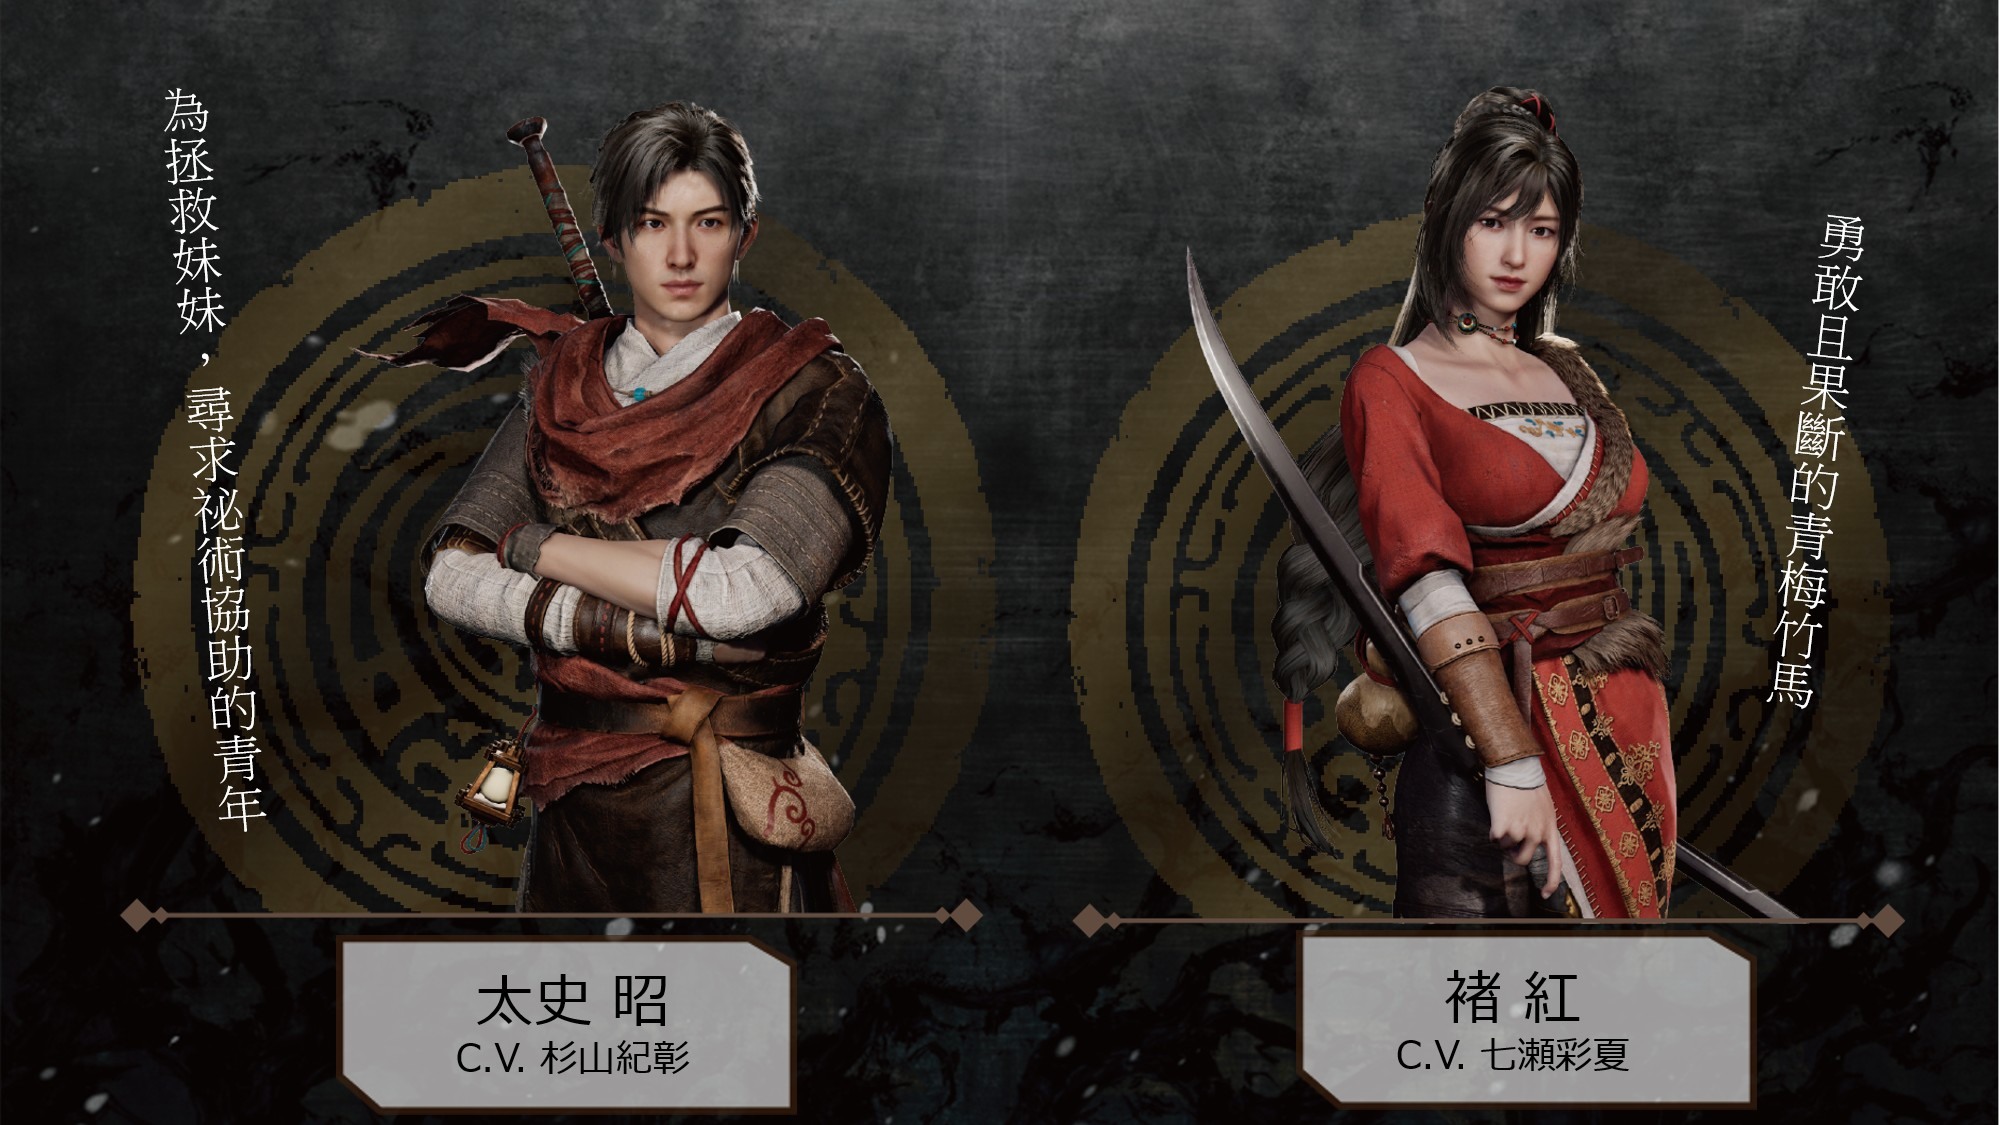 軒轅劍柒 Ps4 版即日起可免費更新追加日文語音 Xuan Yuan Sword Vii 巴哈姆特